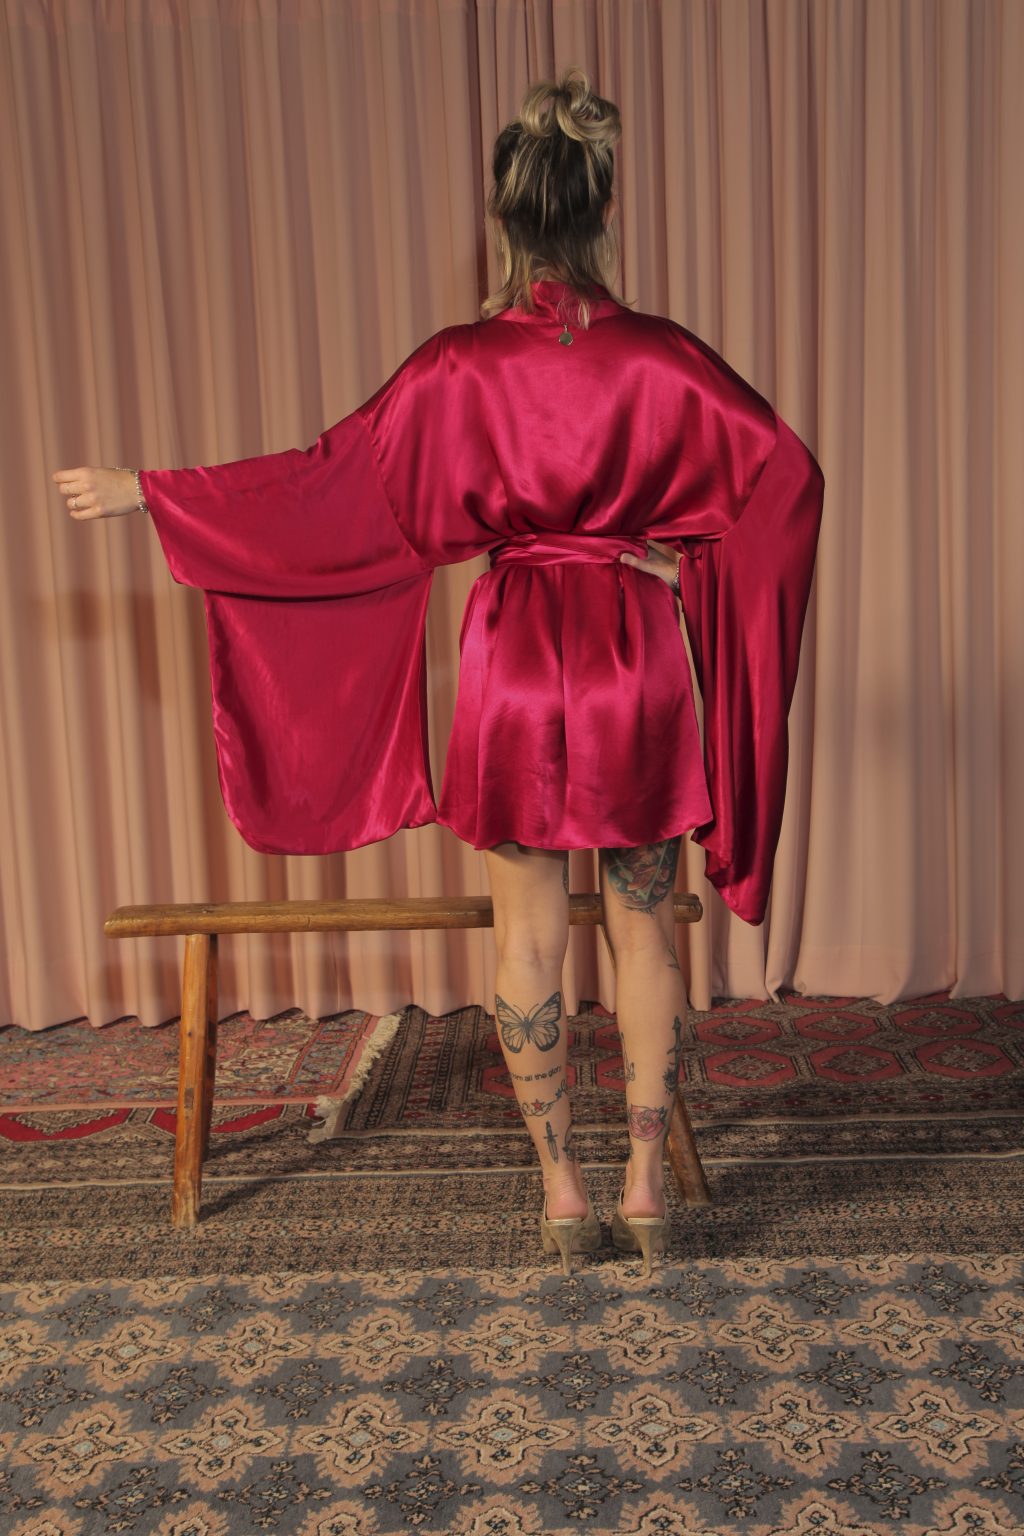 Mulher loira usando um kimono curto manga longa vermelho viscose faixa de amarração na cintura leveza elegância praticidade conforto maria sanz kimono quimono